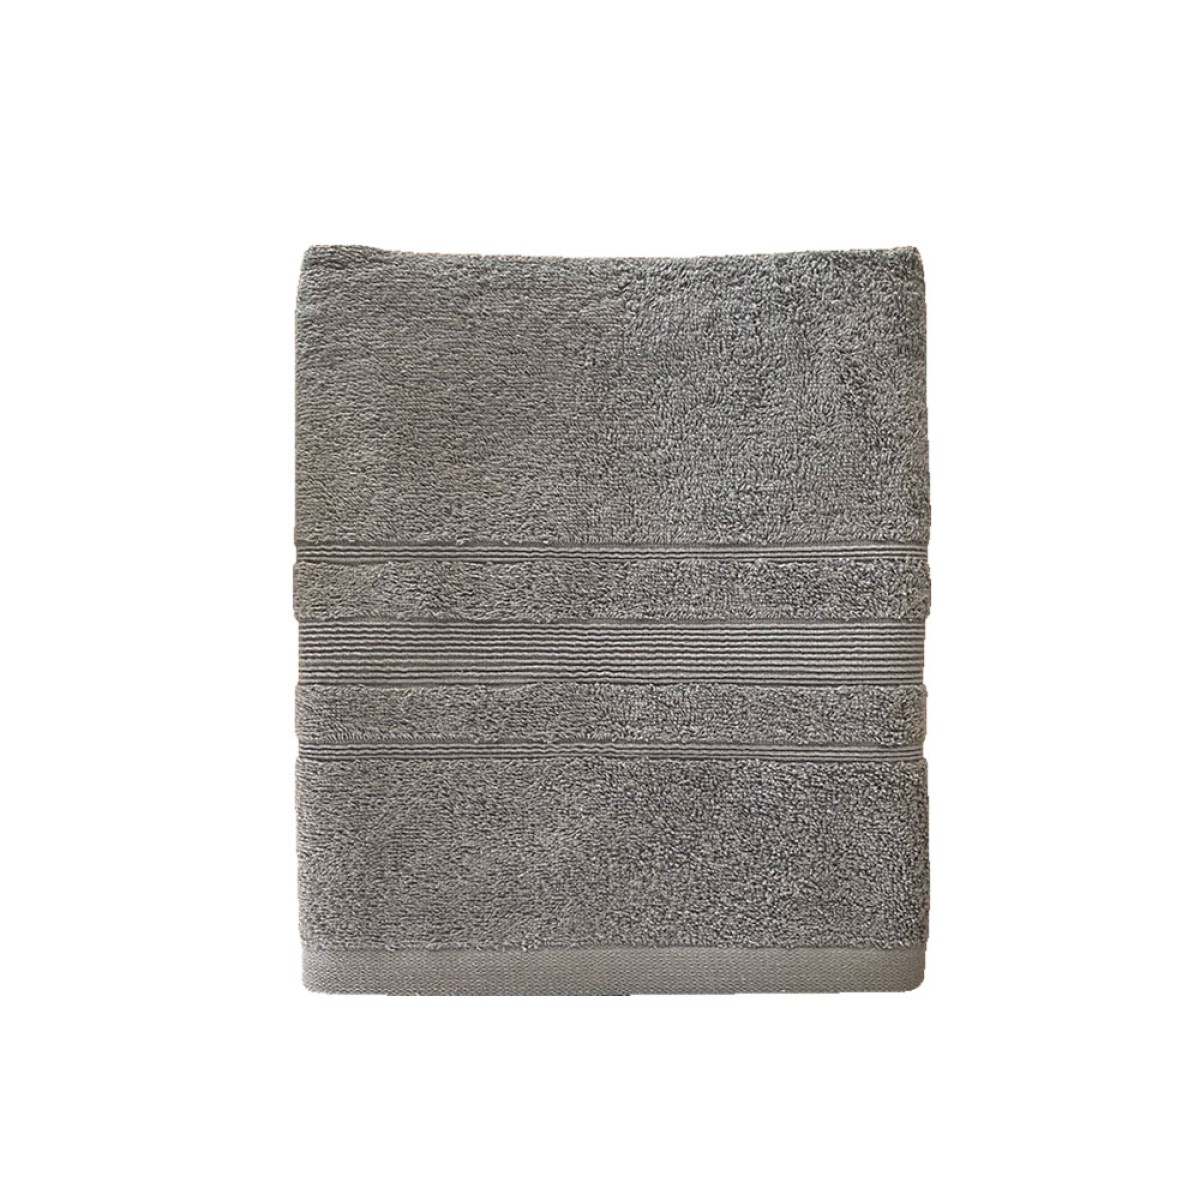 Πετσέτα Προσώπου 550grs (50x90) 100% Βαμβάκι με μπορντούρα με ανάγλυφο σχέδιο σκούρο γκρι χρώμα Sidirela Line E-3202-4